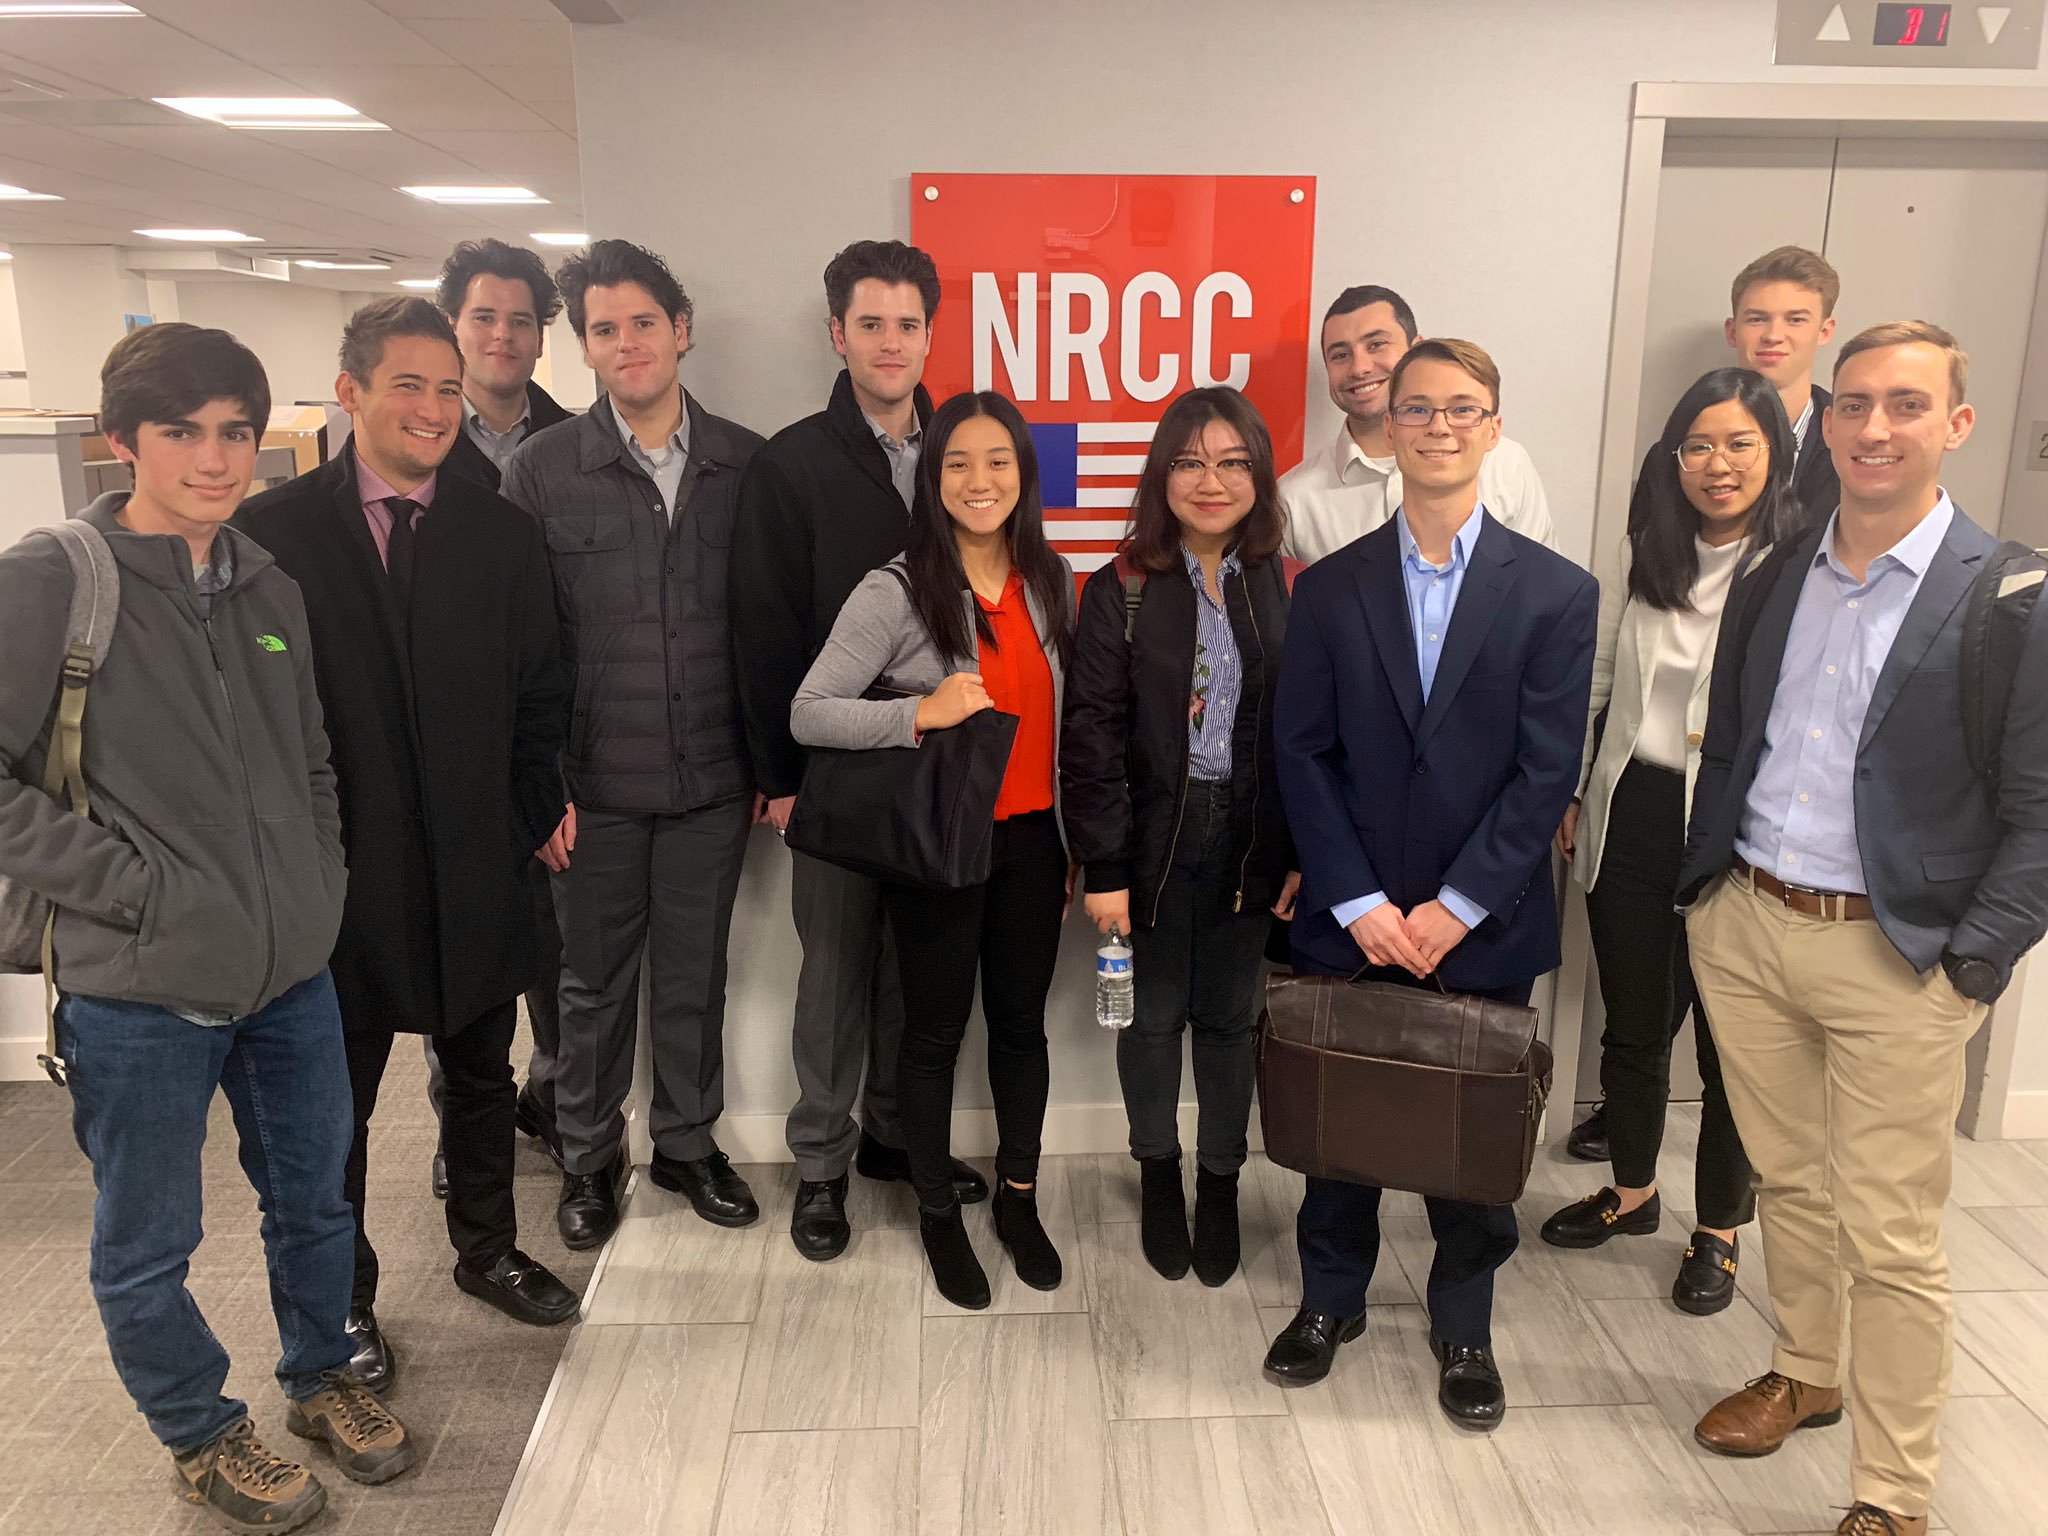 Students at the NRCC